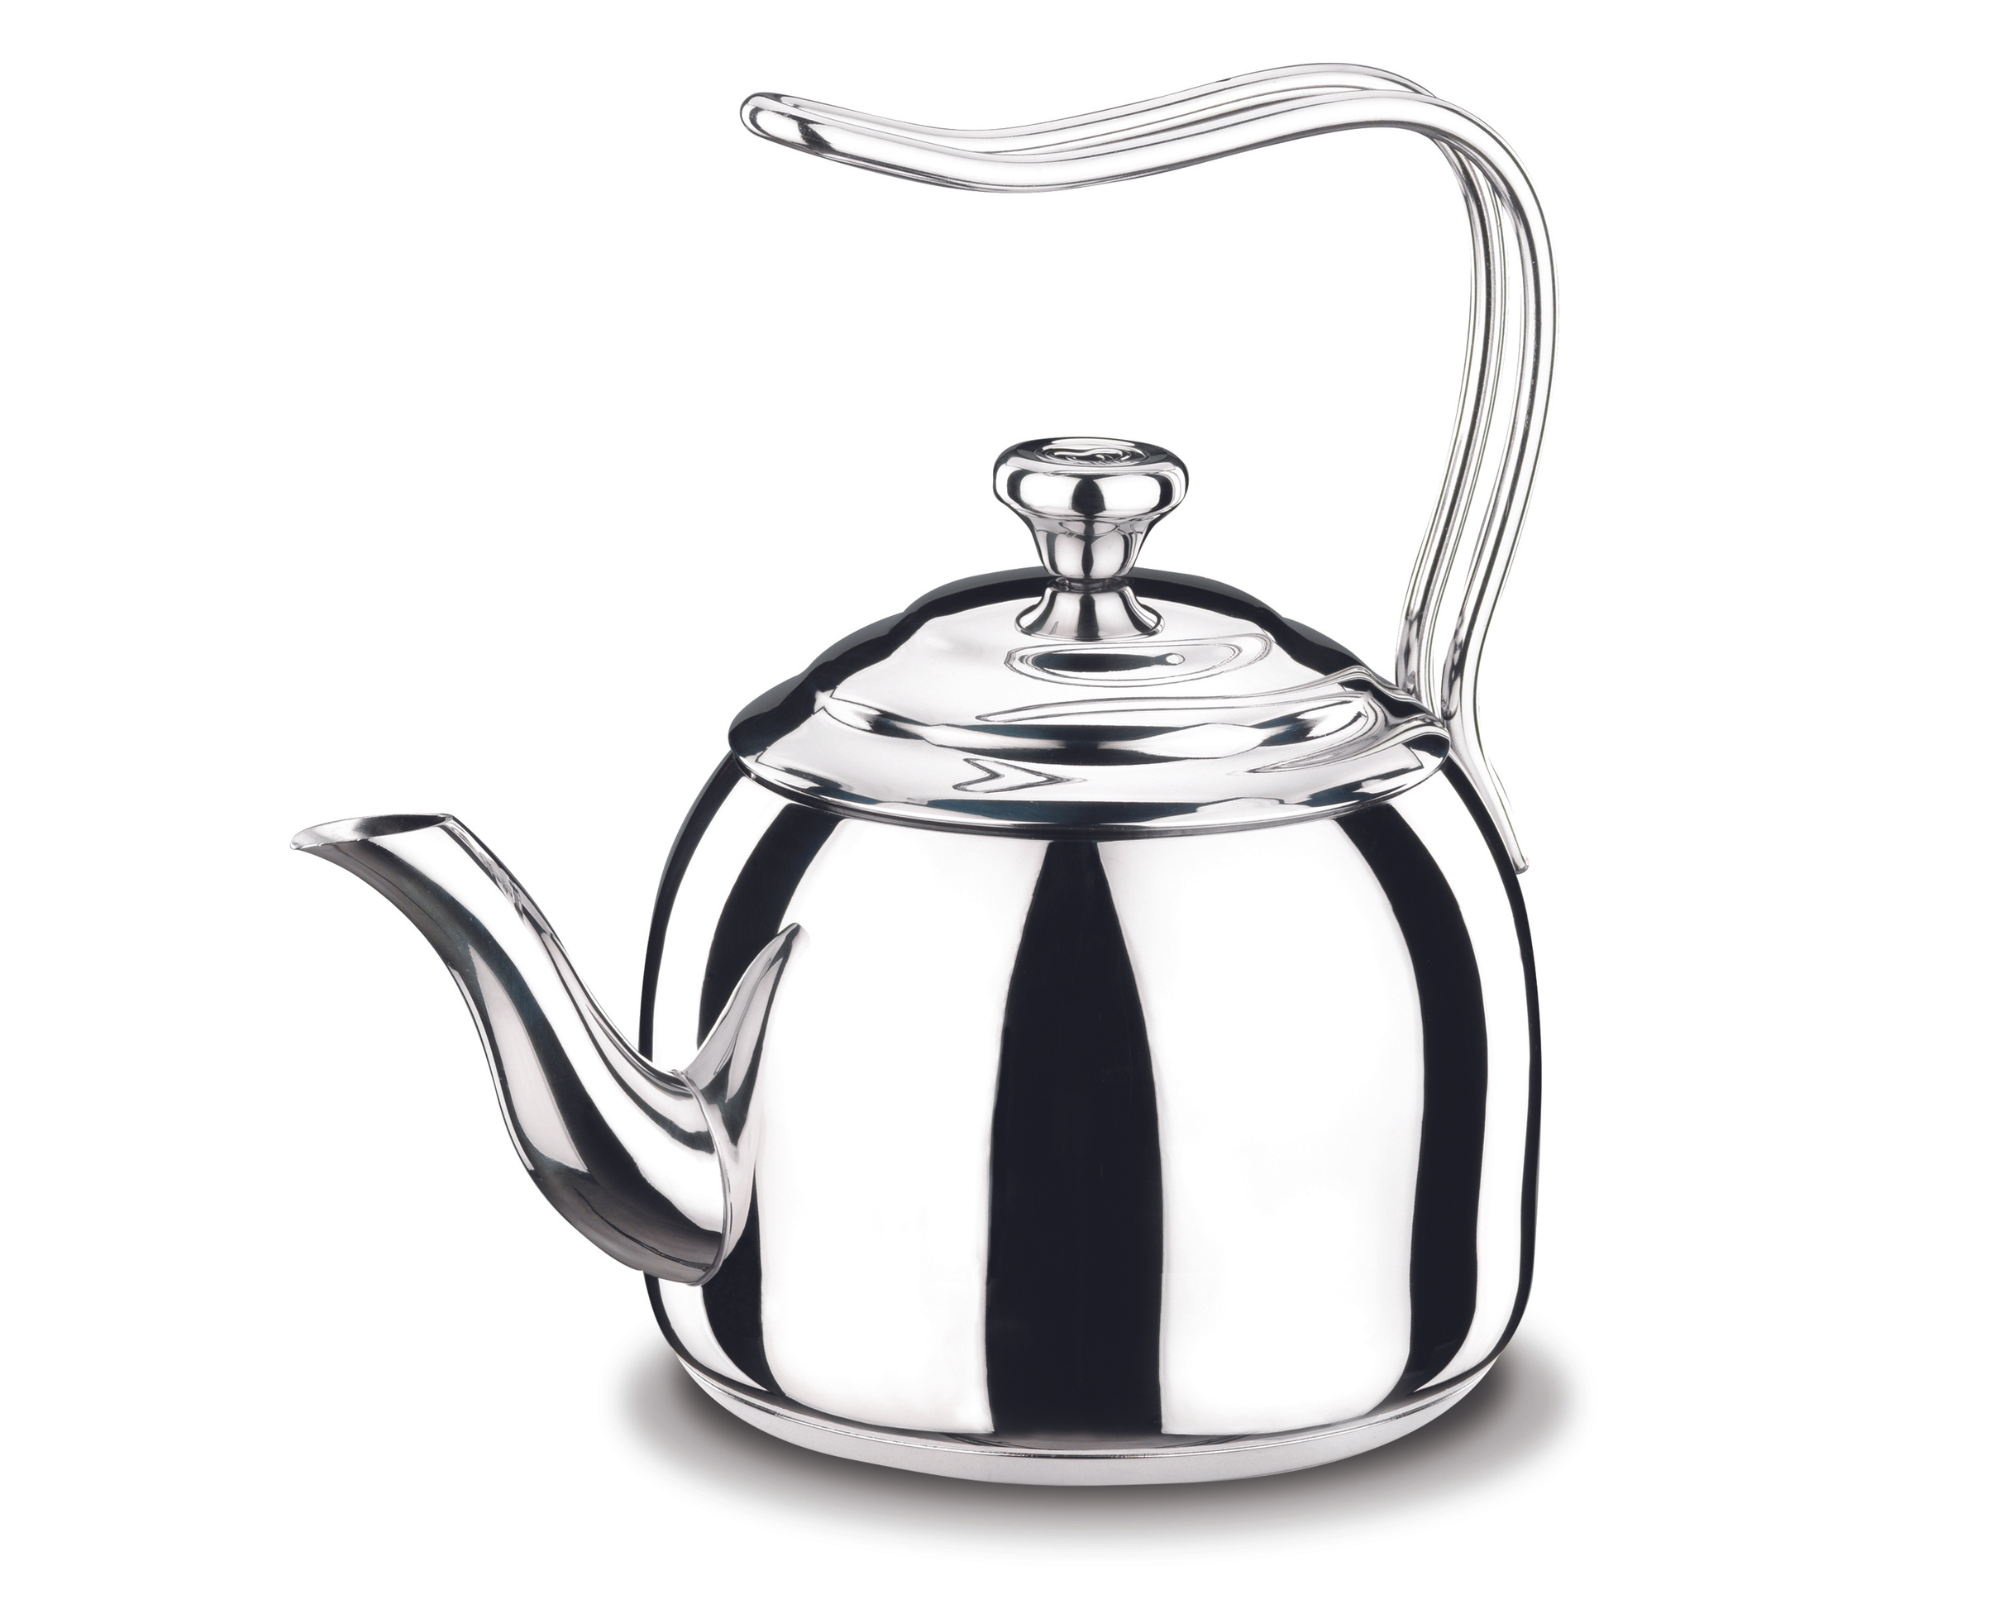  Droppa  Stainless steel Tea Pot 2.7 l